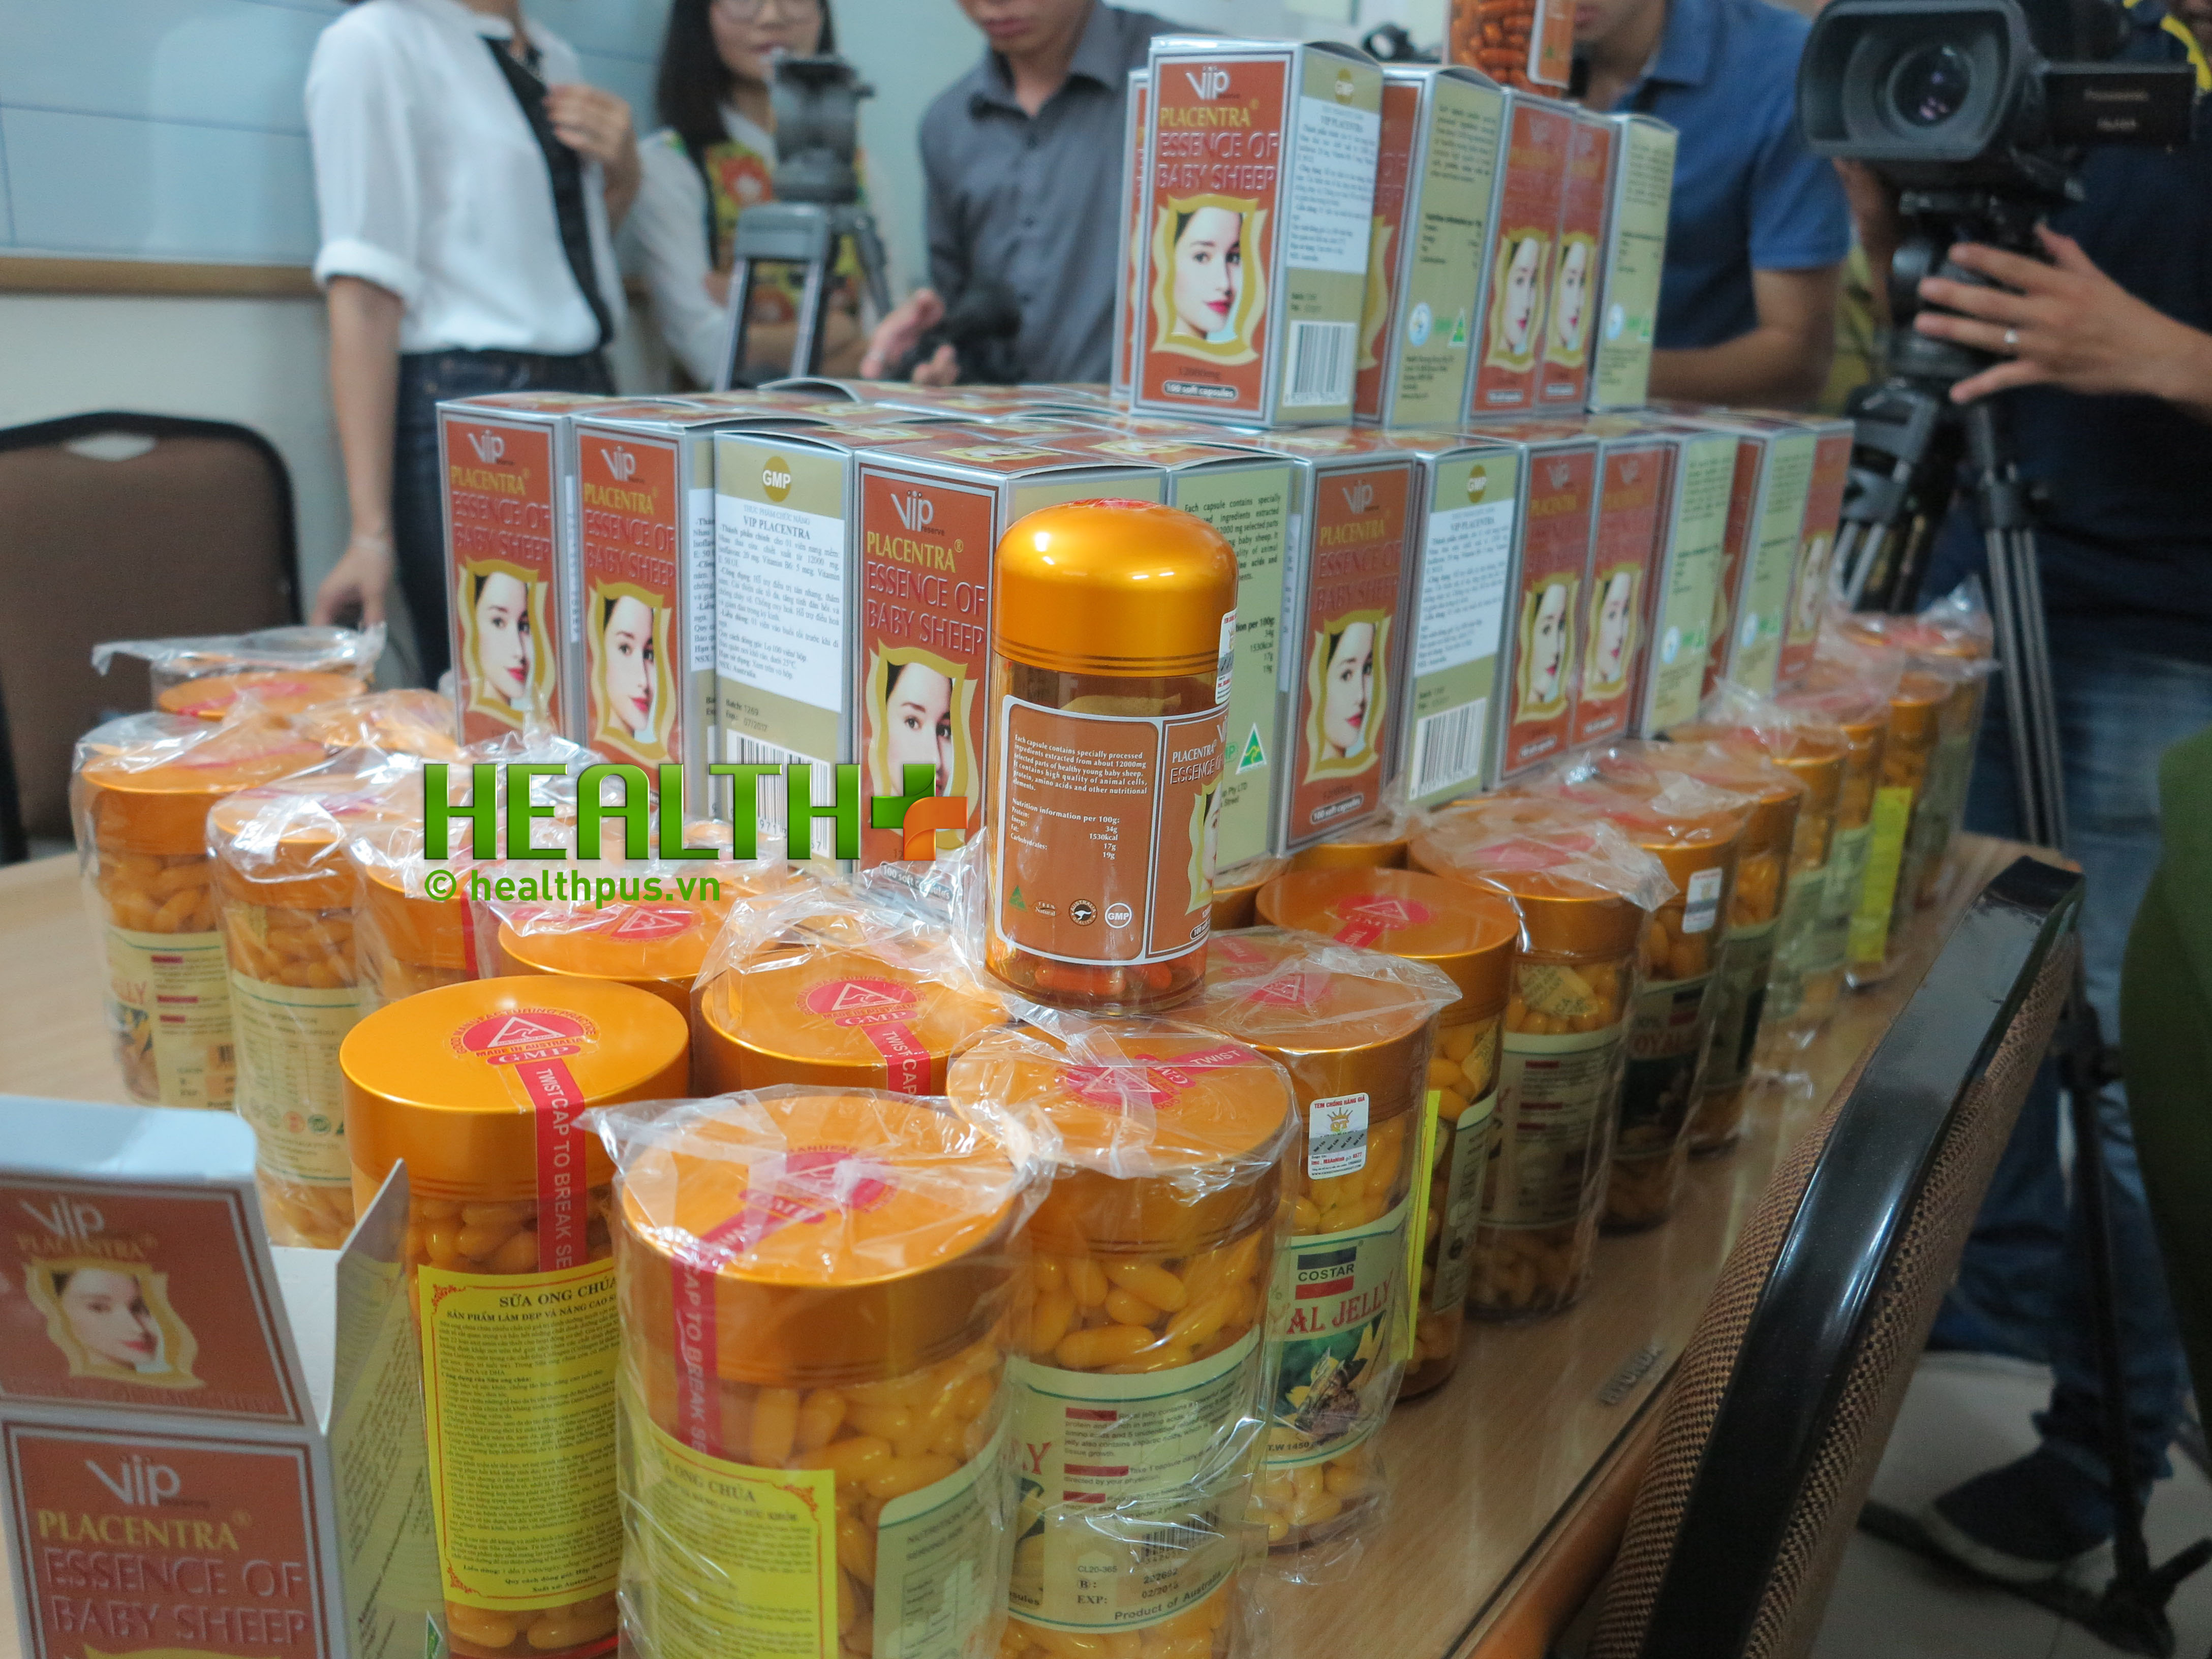 Phát hiện gần 20 tấn thực phẩm chức năng giả tại Hà Nội